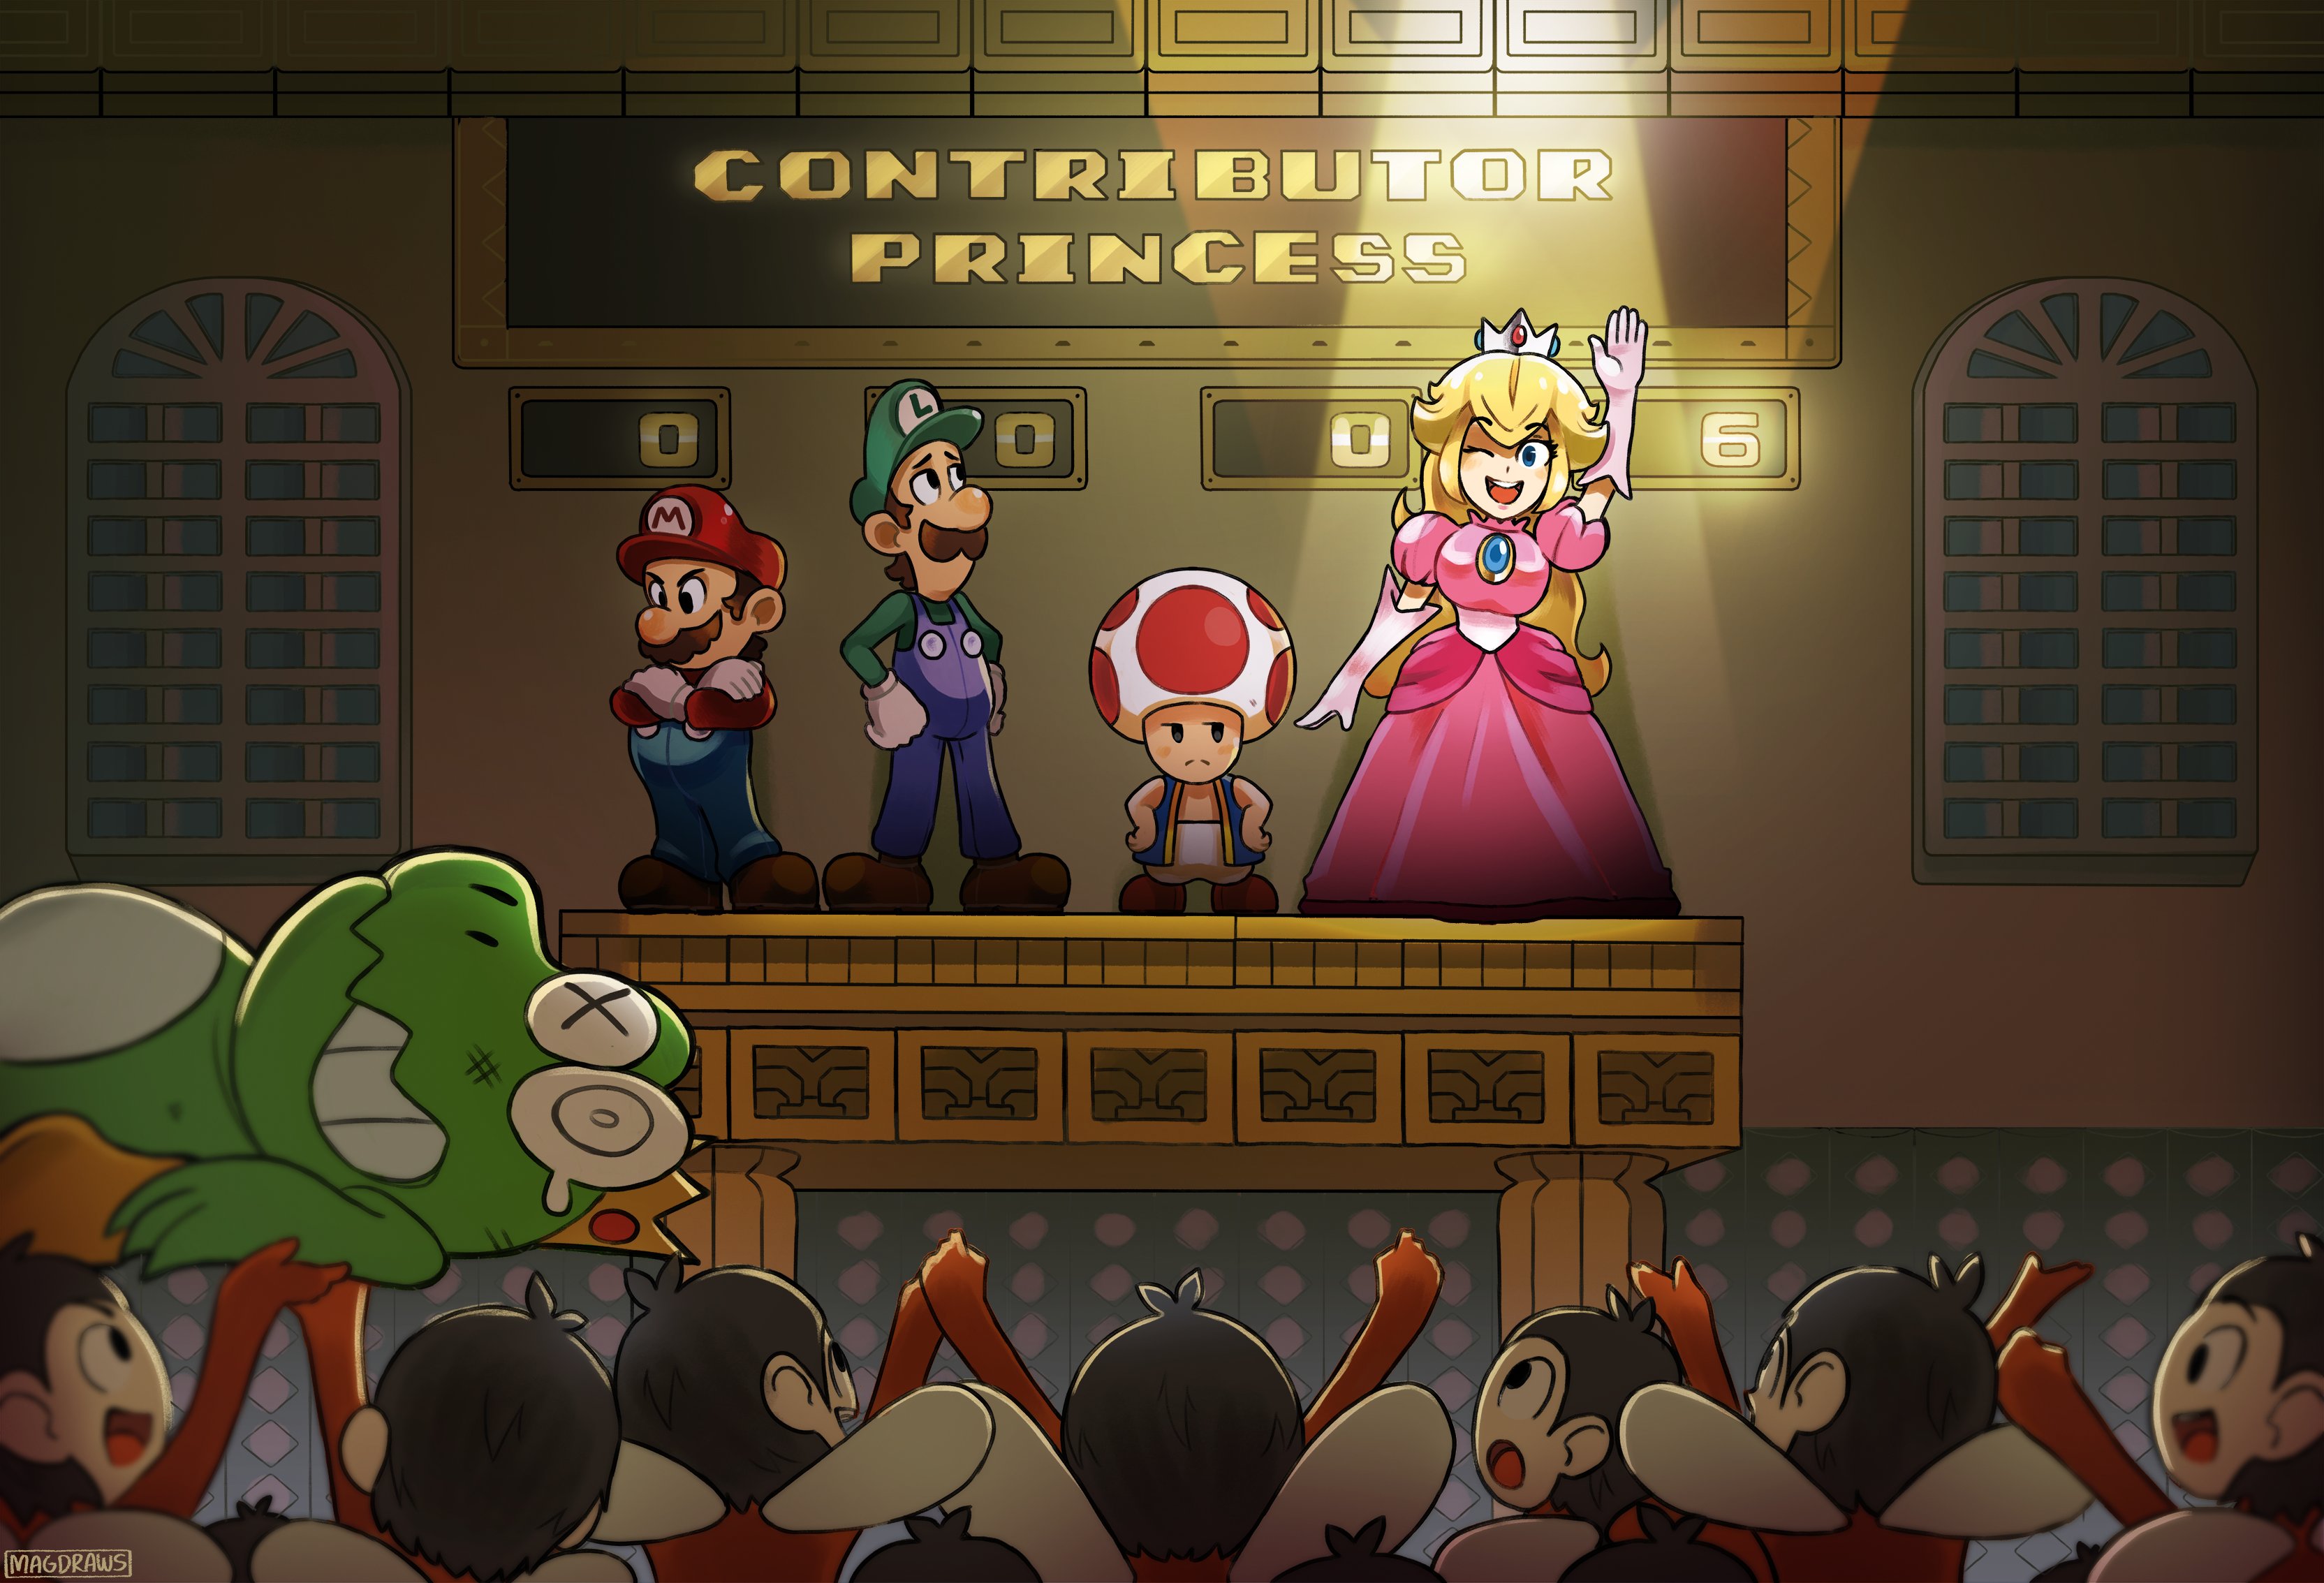 Free download wallpaper Mario, Video Game, Super Mario Bros, Princess Peach, Toad (Mario), Luigi on your PC desktop